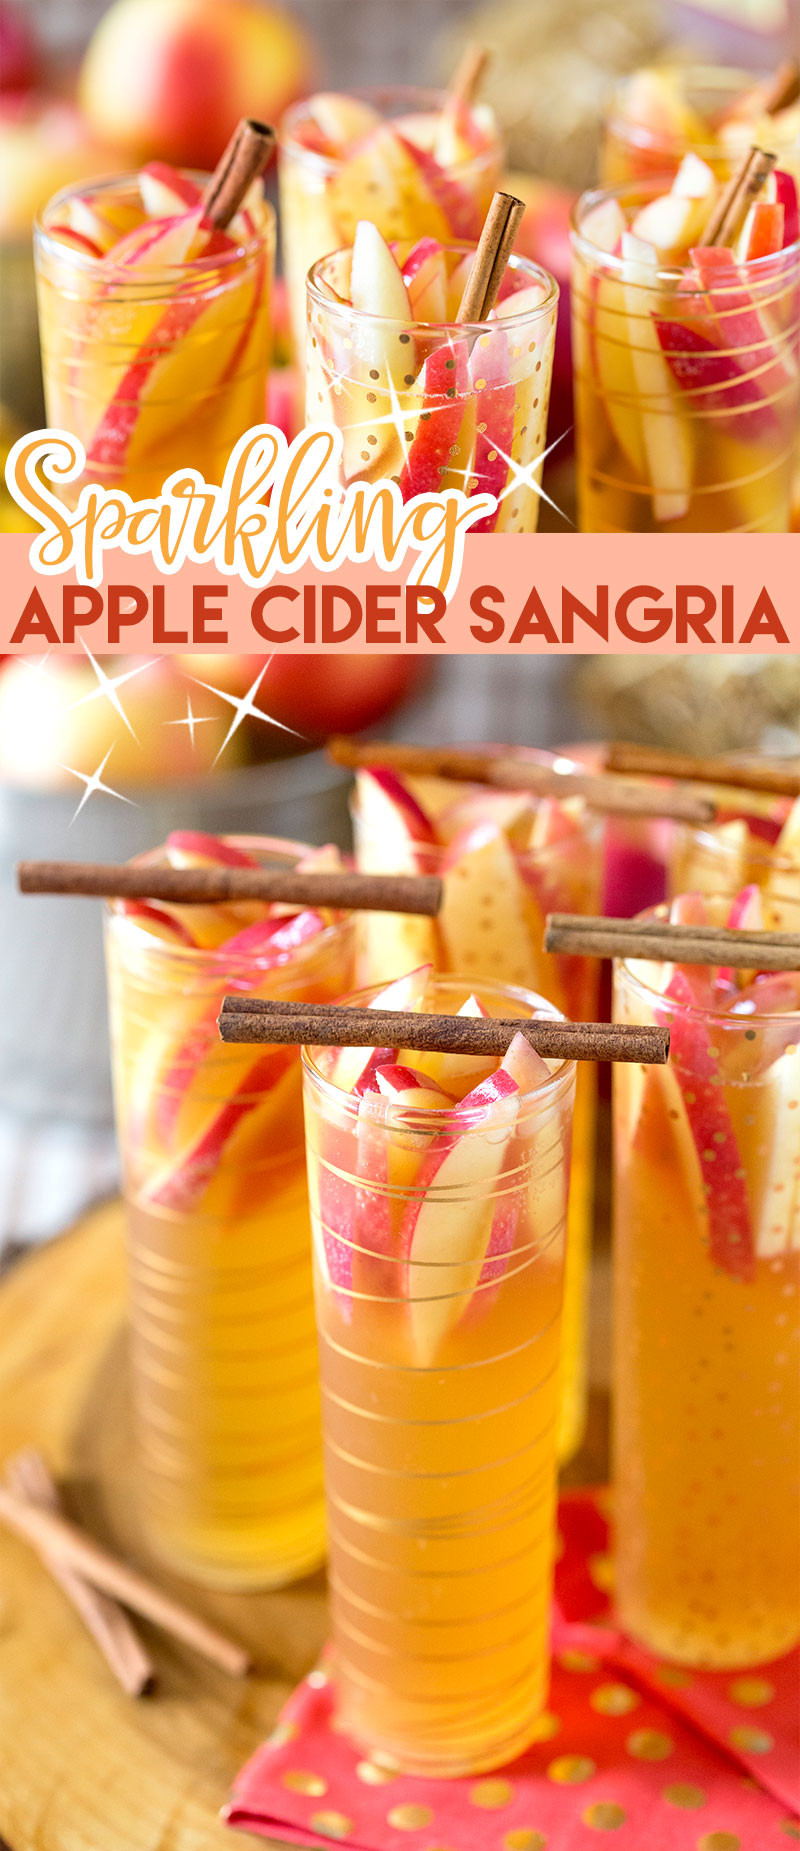 Apple Cider Cocktail Recipes
 Sparkling Apple Cider Sangria Recipe Easy & Delish